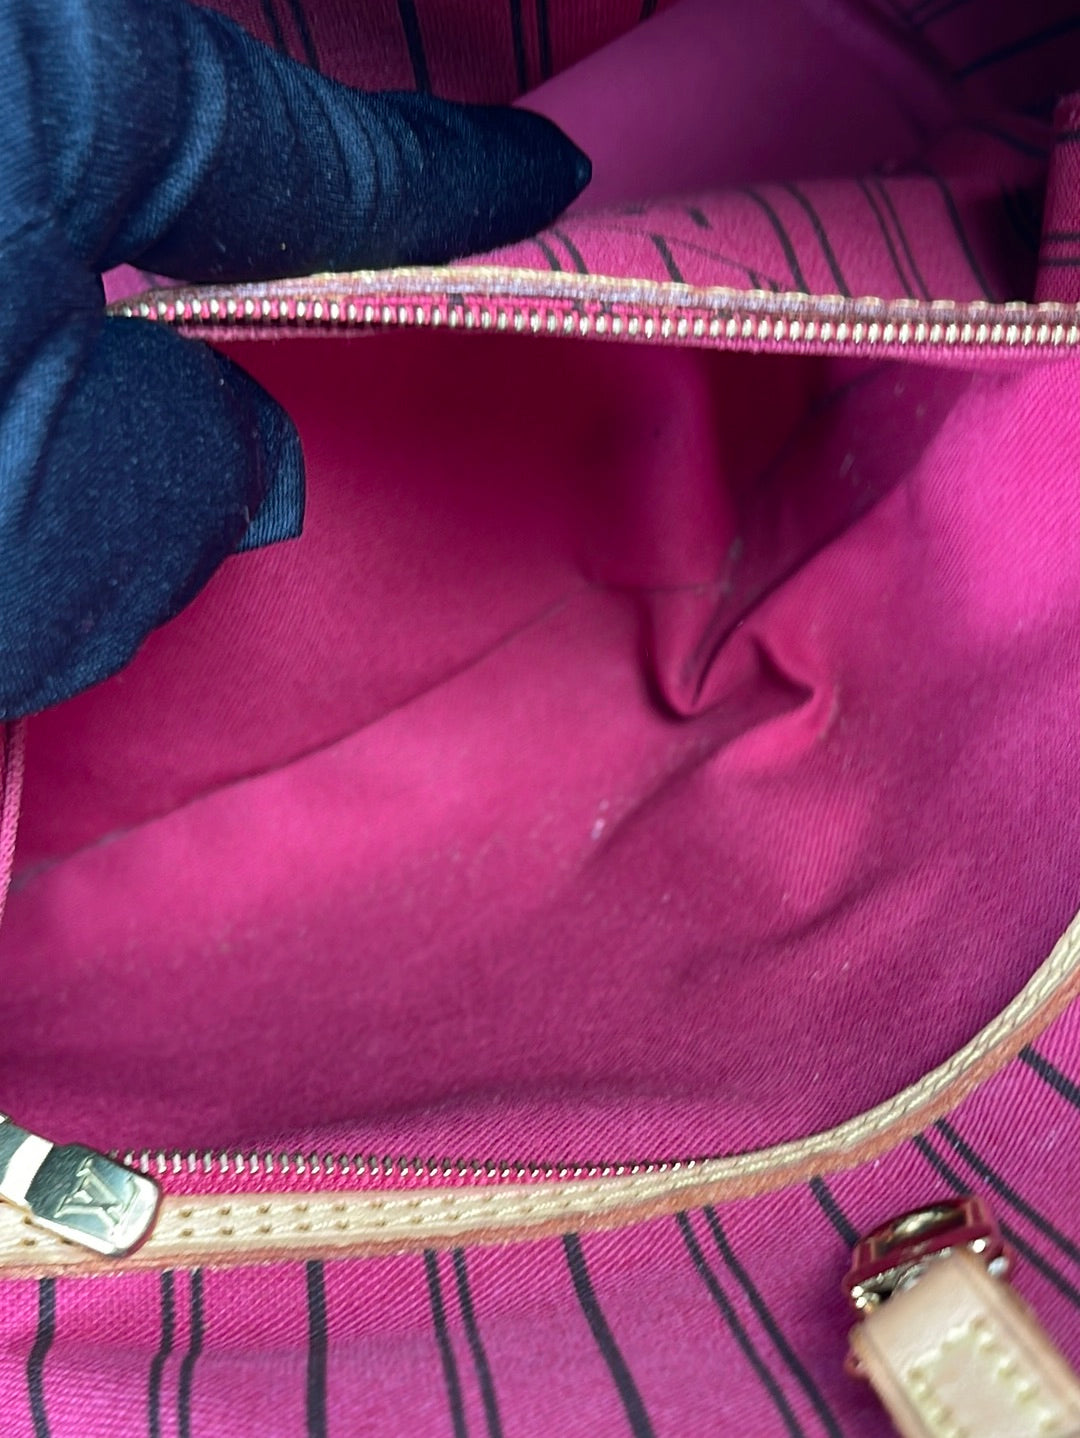 LV Neverfull Monogram Pink Inside M41605💞  Louis vuitton bag neverfull,  Neverfull mm monogram, Louis vuitton neverfull mm